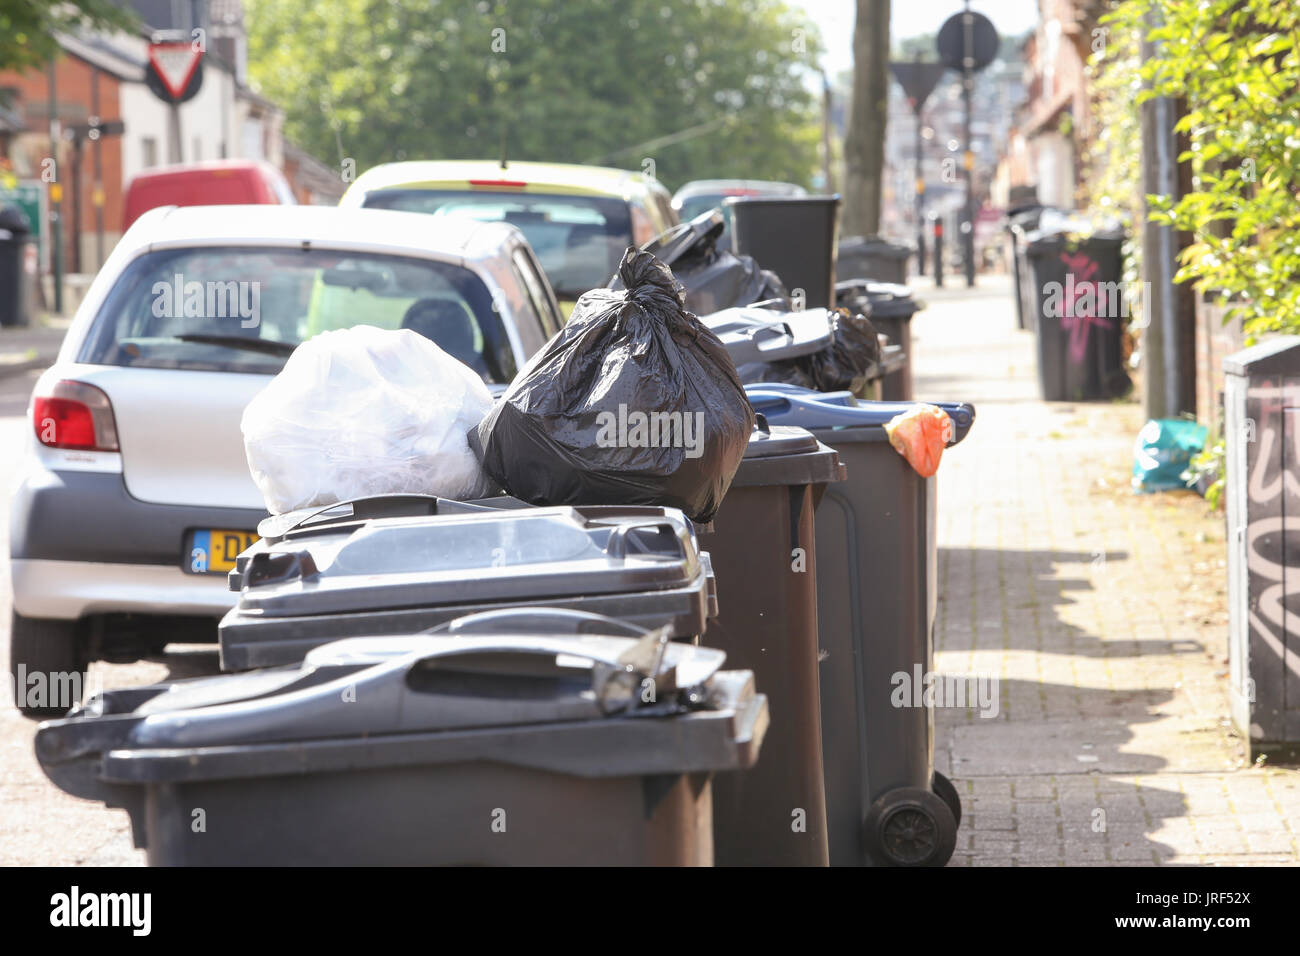 Refuser les déchets ordures s'accumule comme Birmingham Council éboueurs en grève. UK Août 2017 Banque D'Images